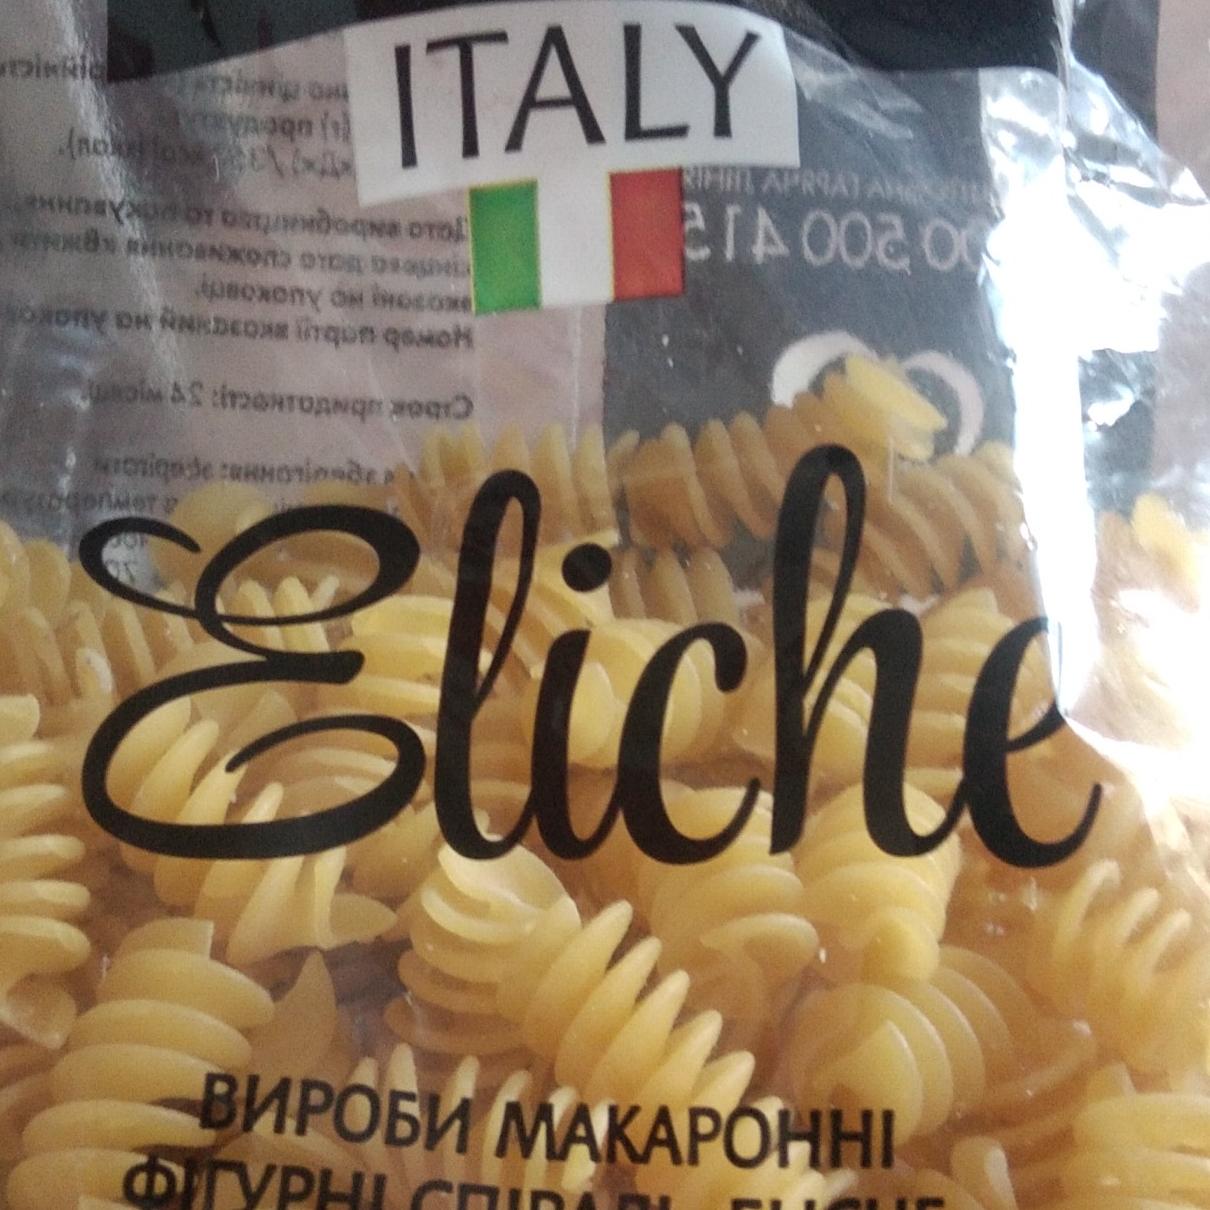 Фото - Макаронные изделия Italy Selected Спирали Eliche De Luxe Foods&Goods